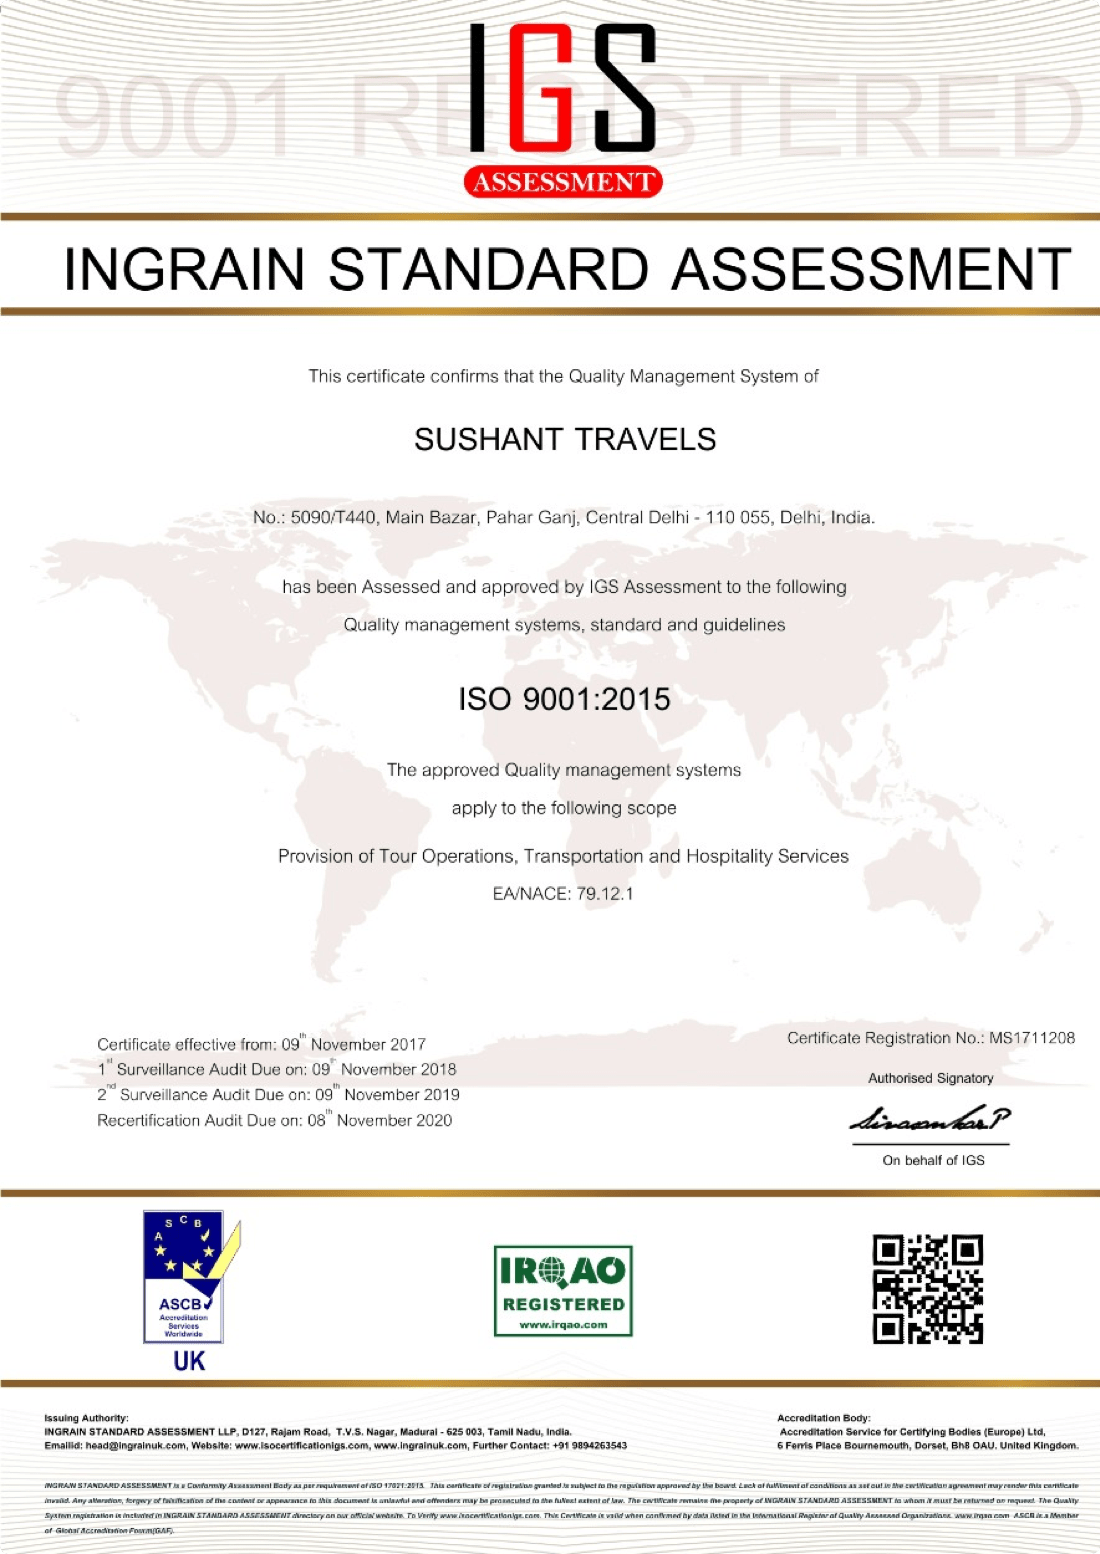 Ingrain Standard Assessment